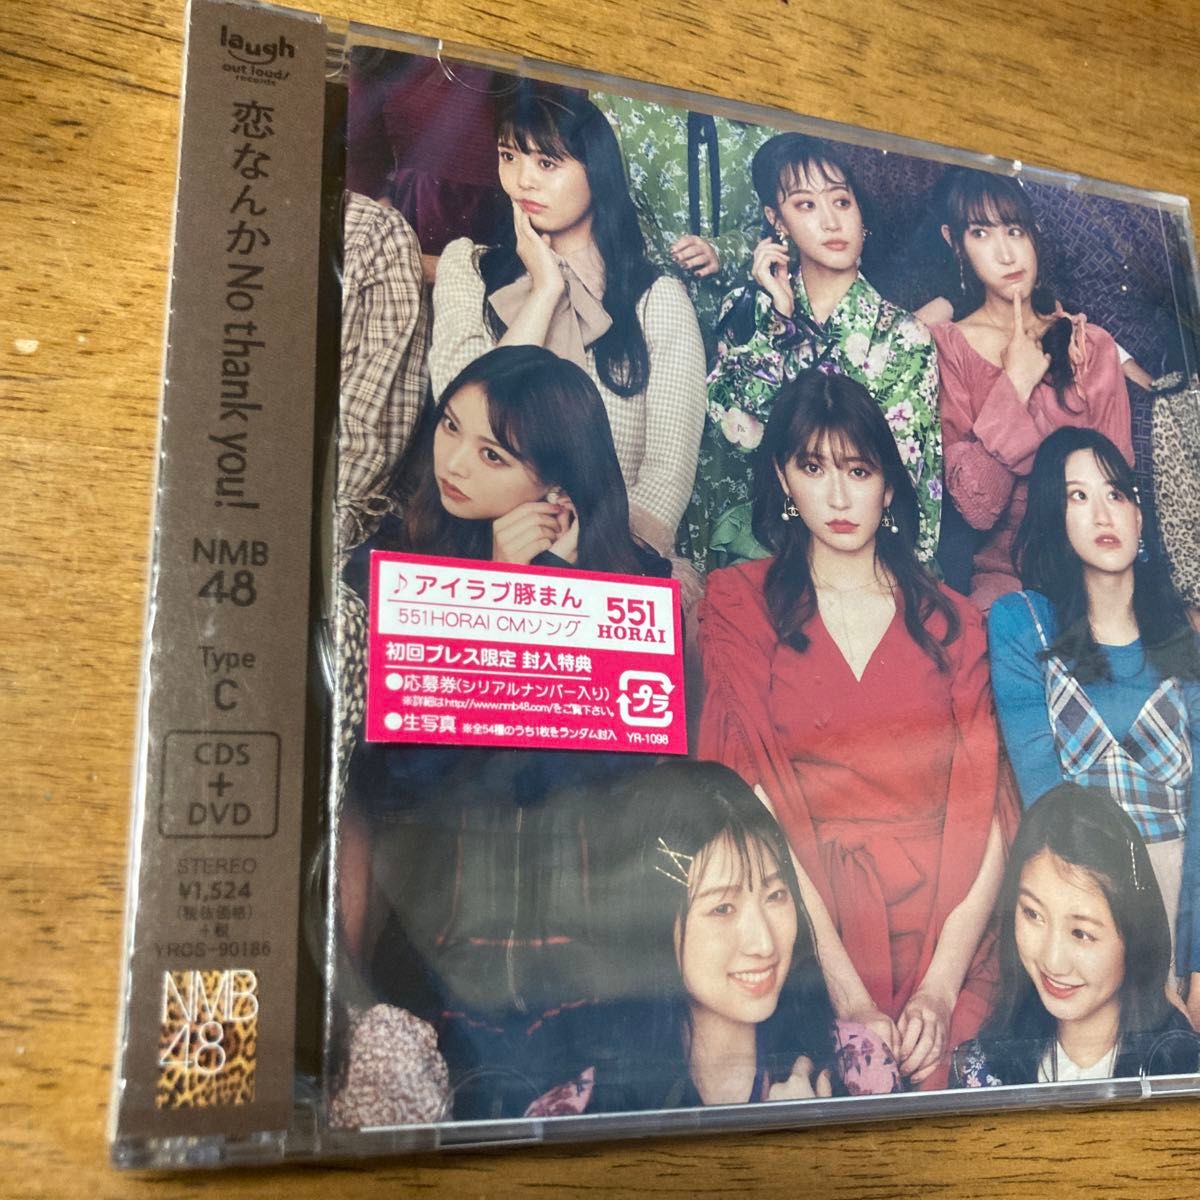 NMB48 通常盤Type-C NMB48 CD+DVD/恋なんかNo thank you! 20/11/18発売